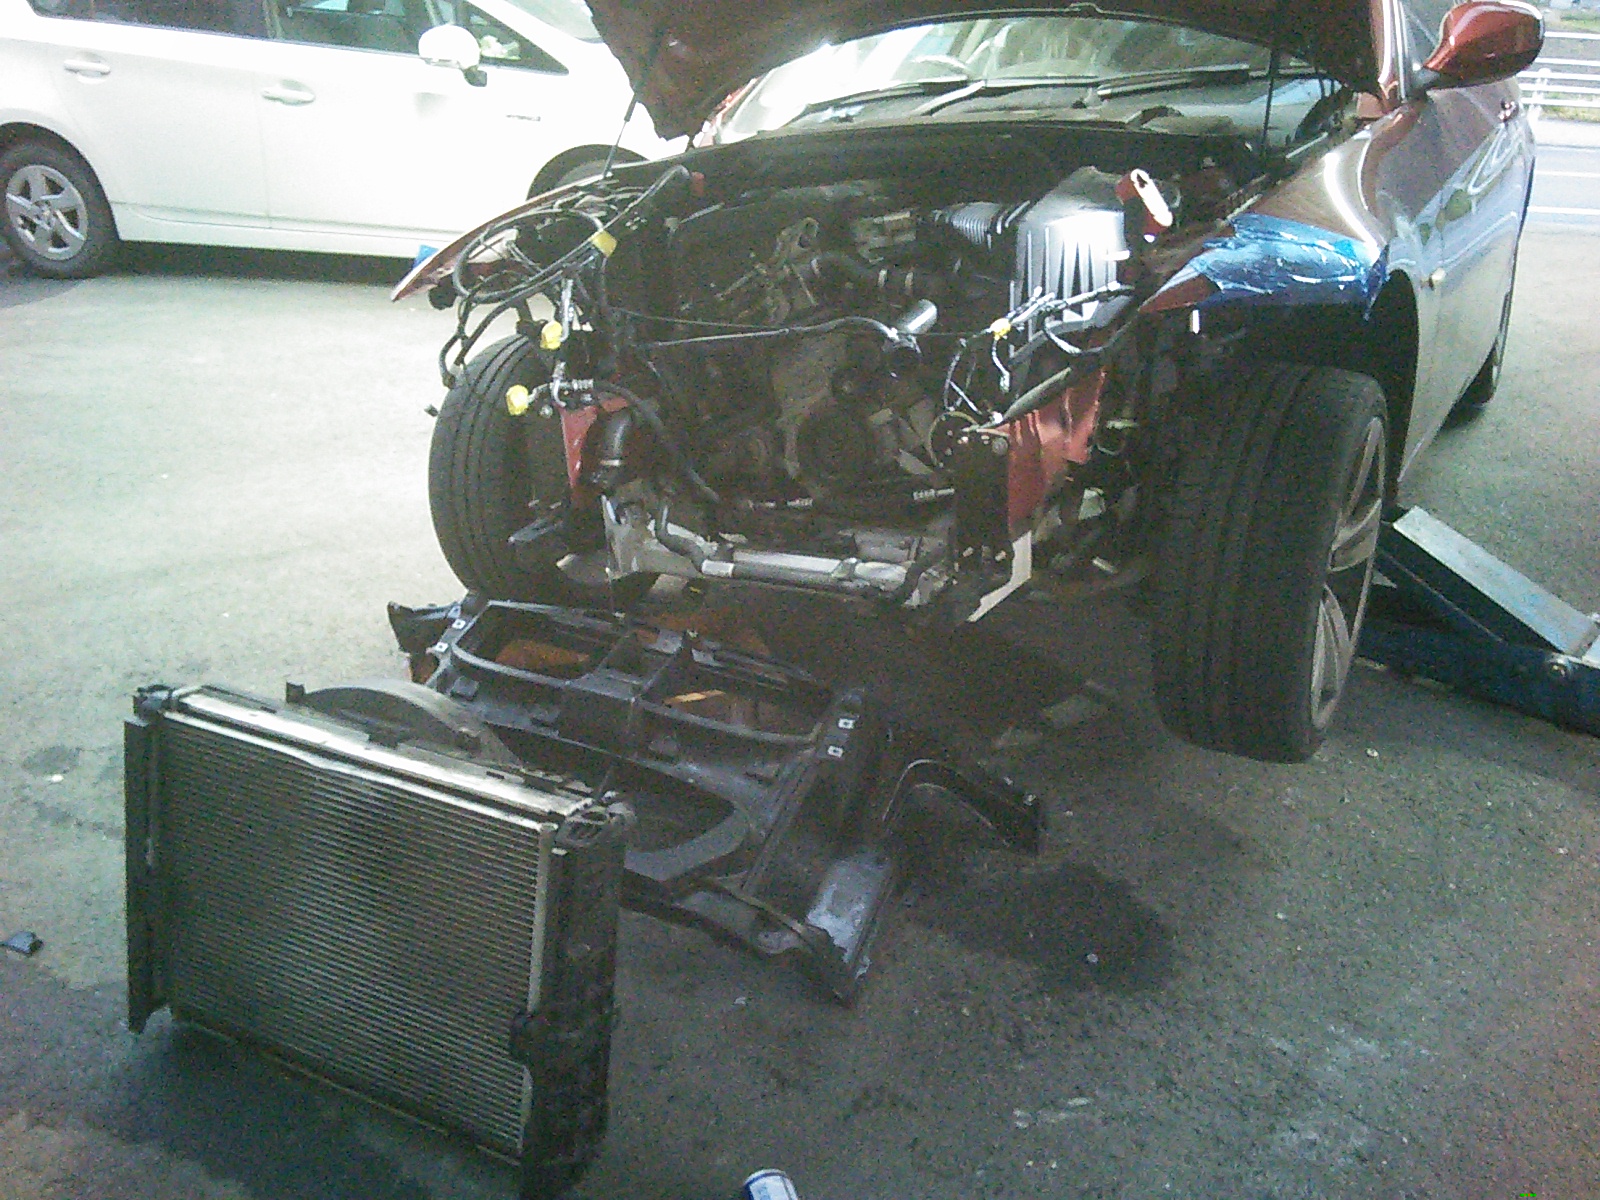 BMW　３２０i　事故修理。意外にに大作業に(;^ω^)。